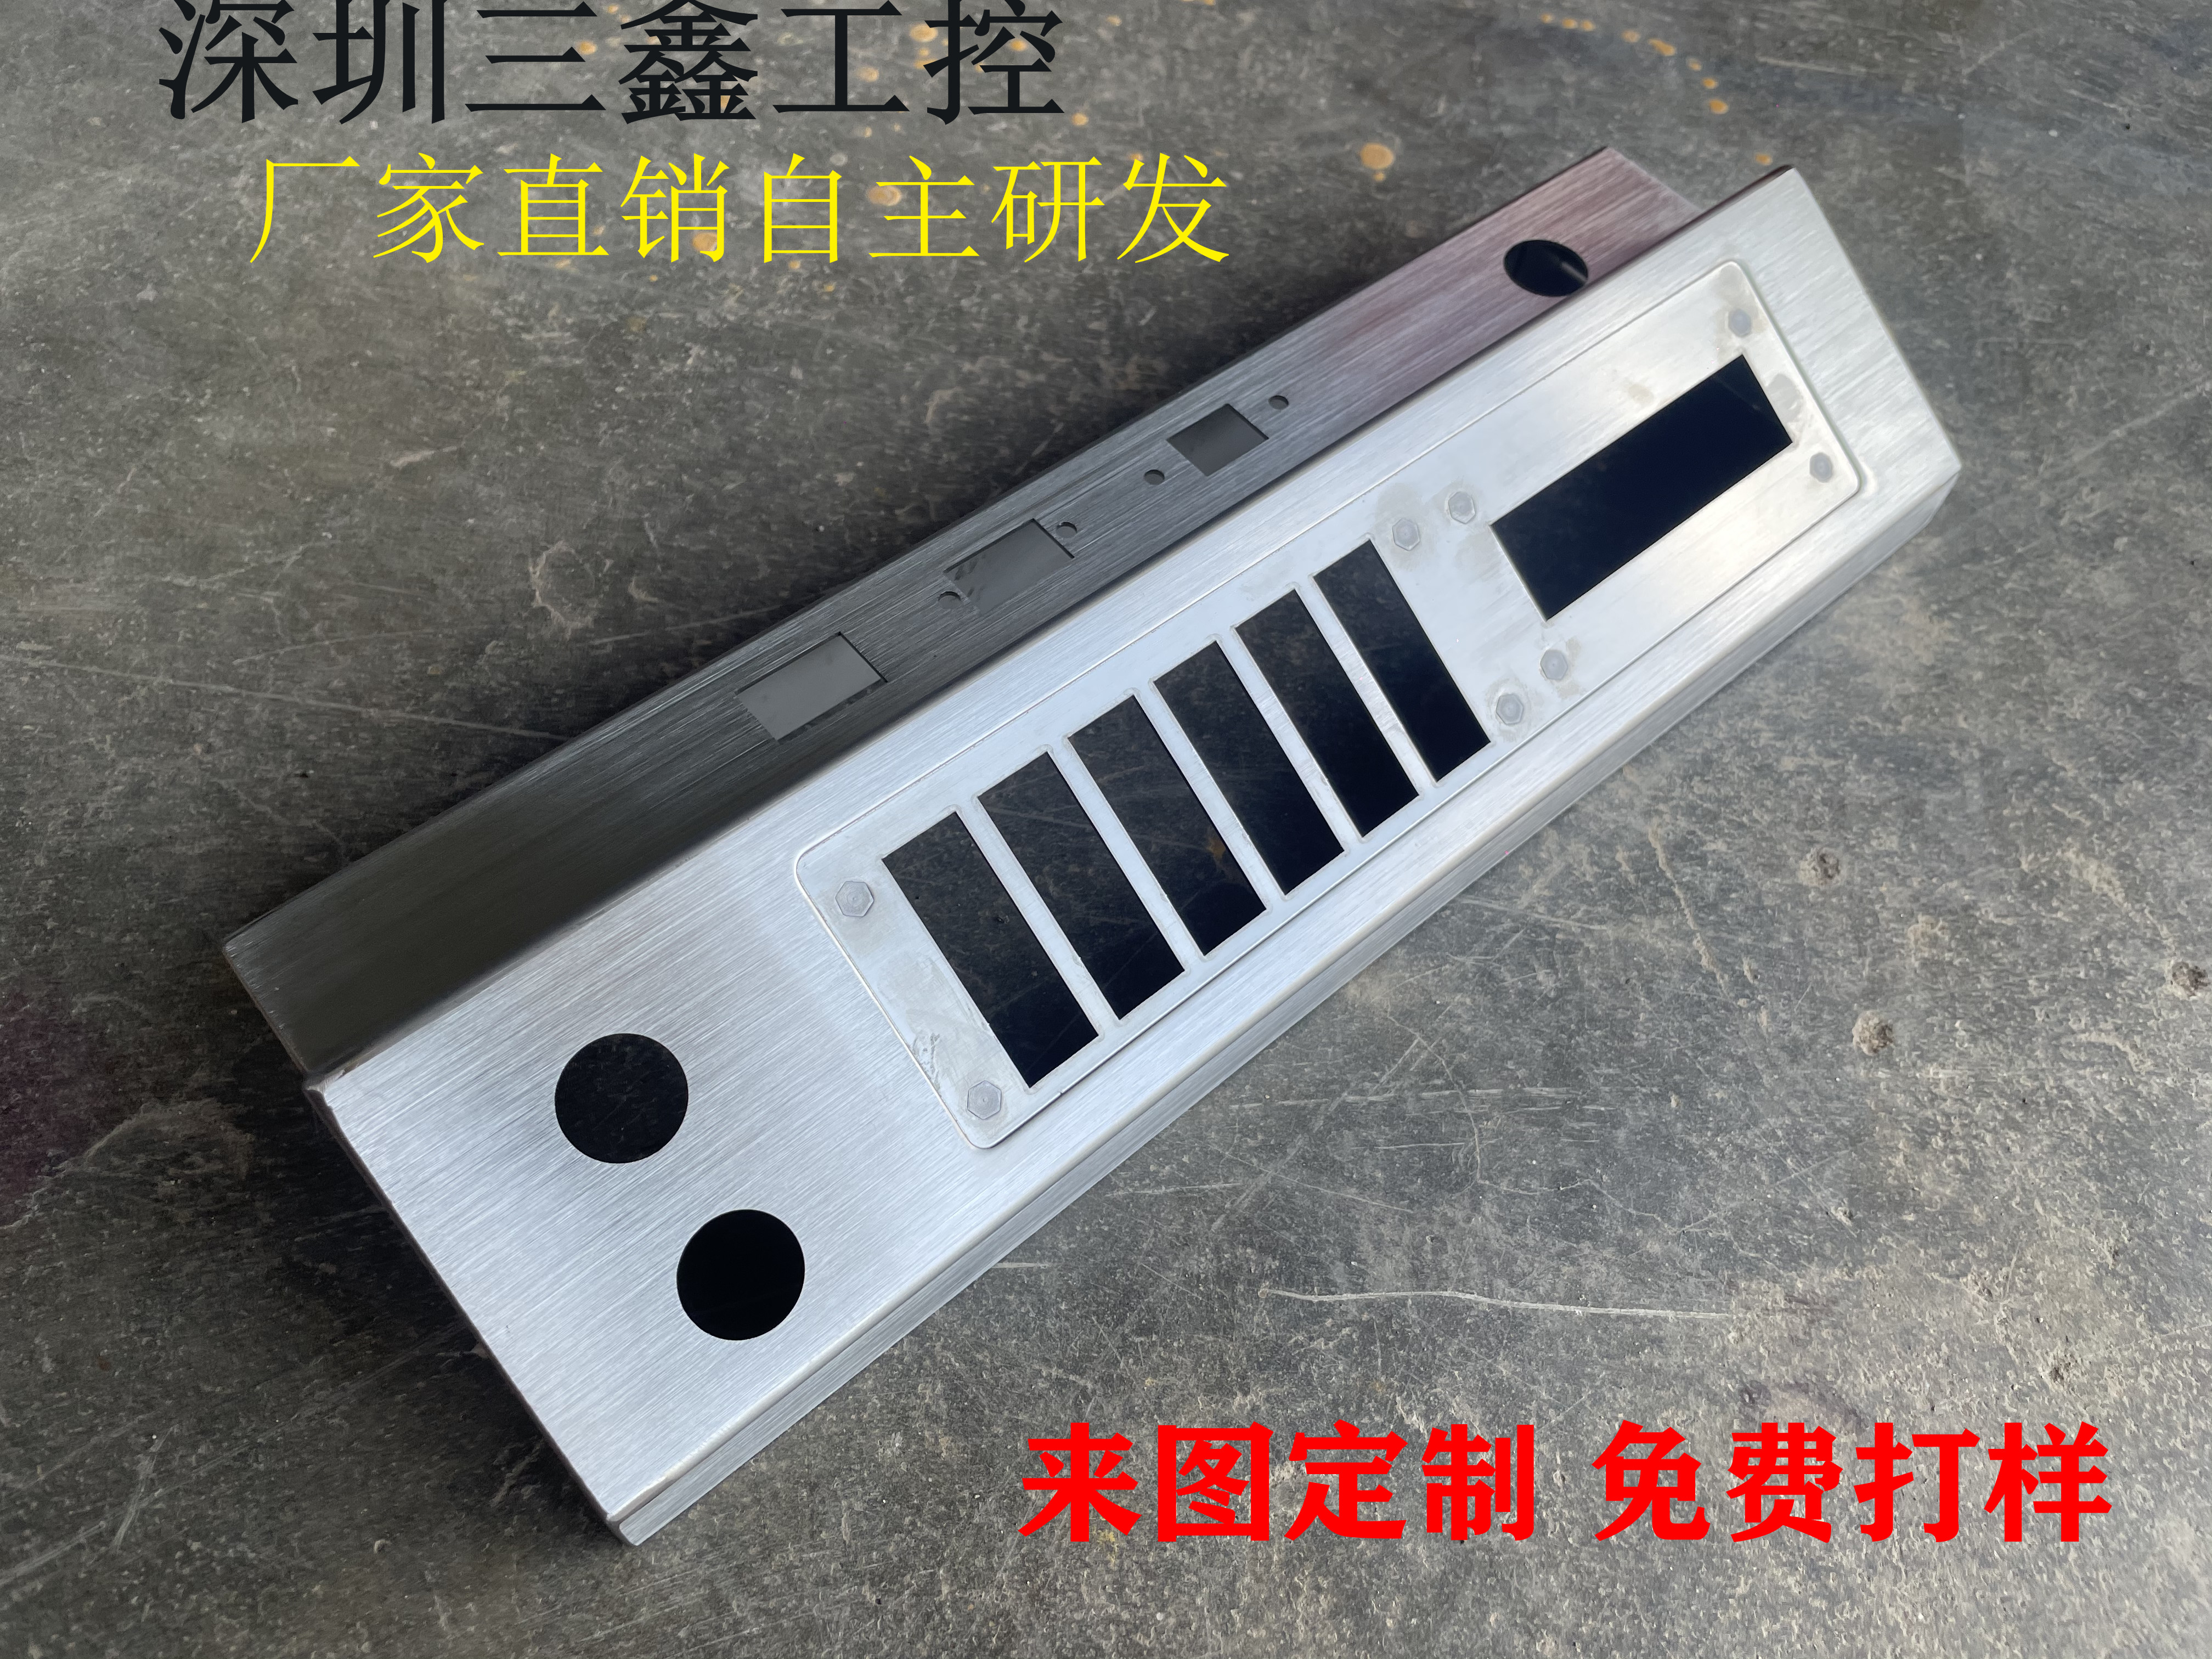 不锈钢机柜 深圳标准通讯不锈钢机箱各种型号